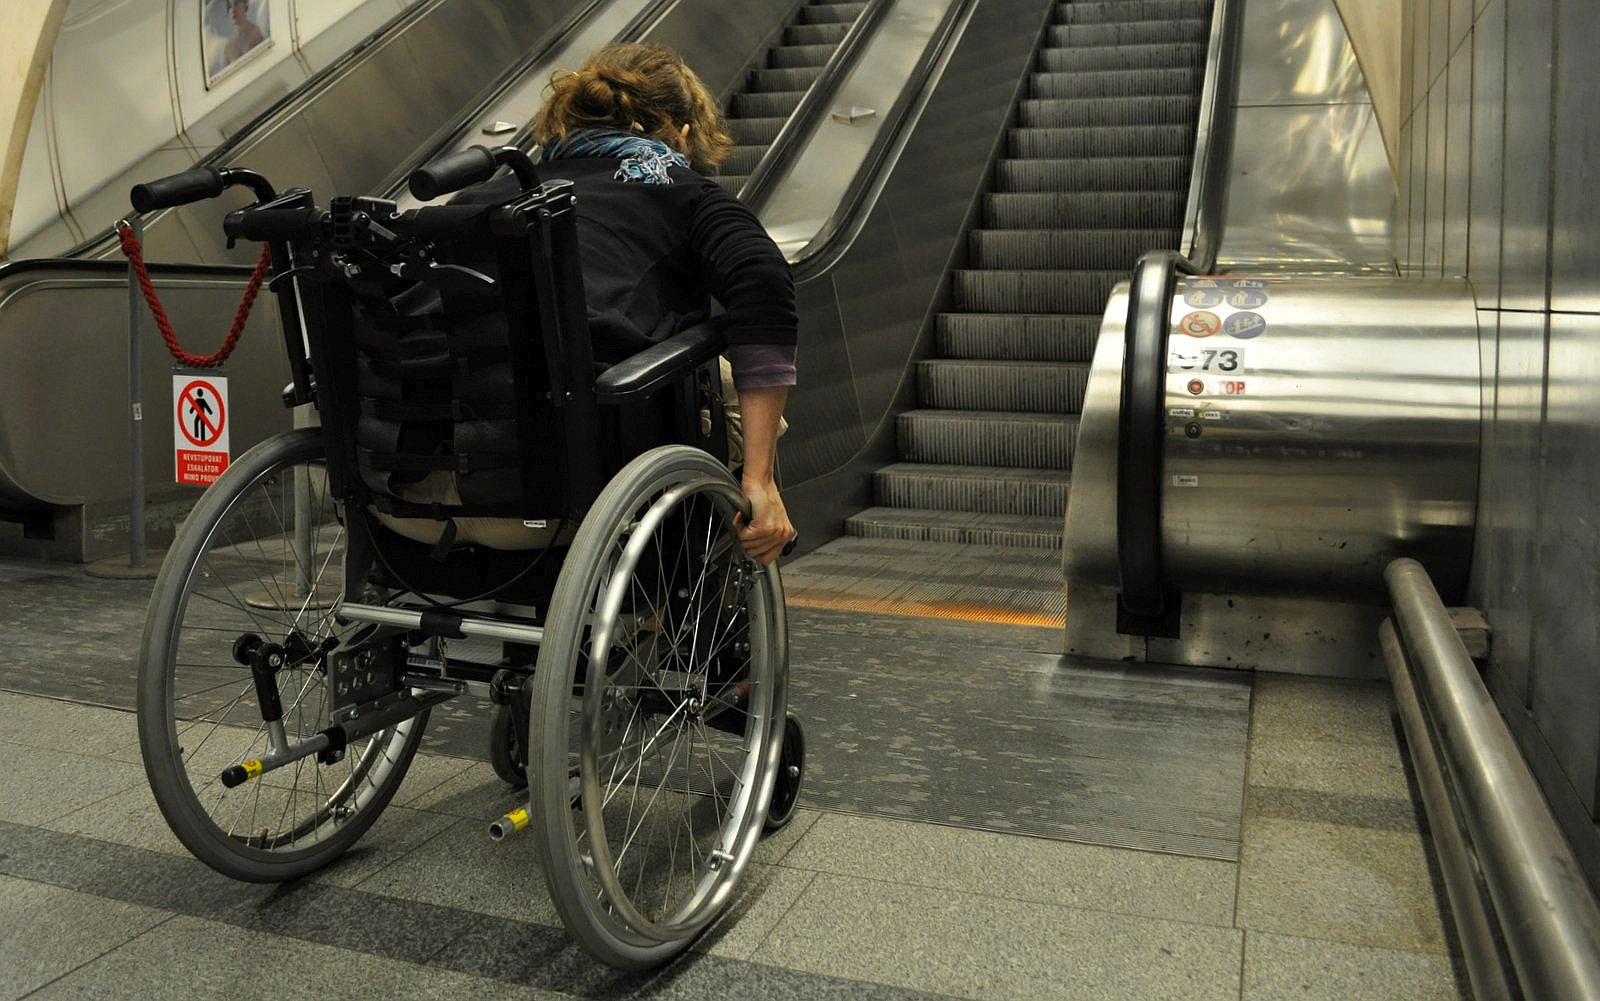 invalidní vozíček před eskalátory, samota, soběstačnost / -ima-